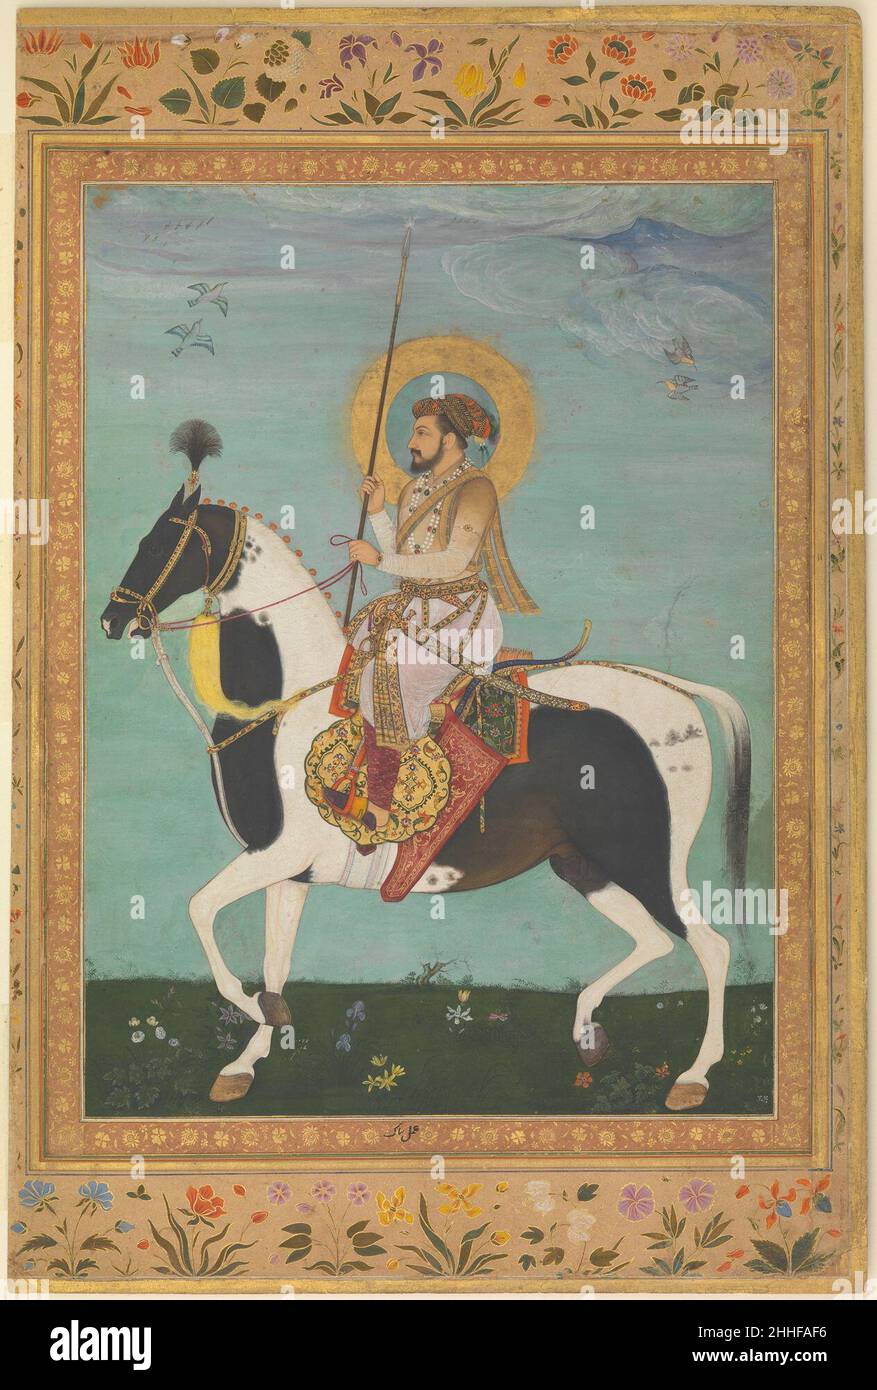 'Shah Jahan on Horseback', Folio aus dem Shah Jahan Album Verso: Ca. 1630; recto: Ca. 1530–50 Painting by Payag der Inder Payag arbeitete im Laufe einer bemerkenswert langen, siebenzehnjährigen Karriere für die Kaiser Akbar, Jahangir und Shah Jahan, und sein Bruder Balchand war auch ein talentierter Maler, mit dem er an einer Handvoll Gemälde mitarbeitete. Die Zuordnung dieses Porträts zu Payag, geschrieben in der Grenze unter dem Gemälde von Shah Jahan, wurde kürzlich durch die Entdeckung einer mikroskopischen Signatur auf der goldenen Spitze des Kaiserbogens bestätigt. „Shah Jahan auf dem Pferderennen“, Folio vom Shah Stockfoto